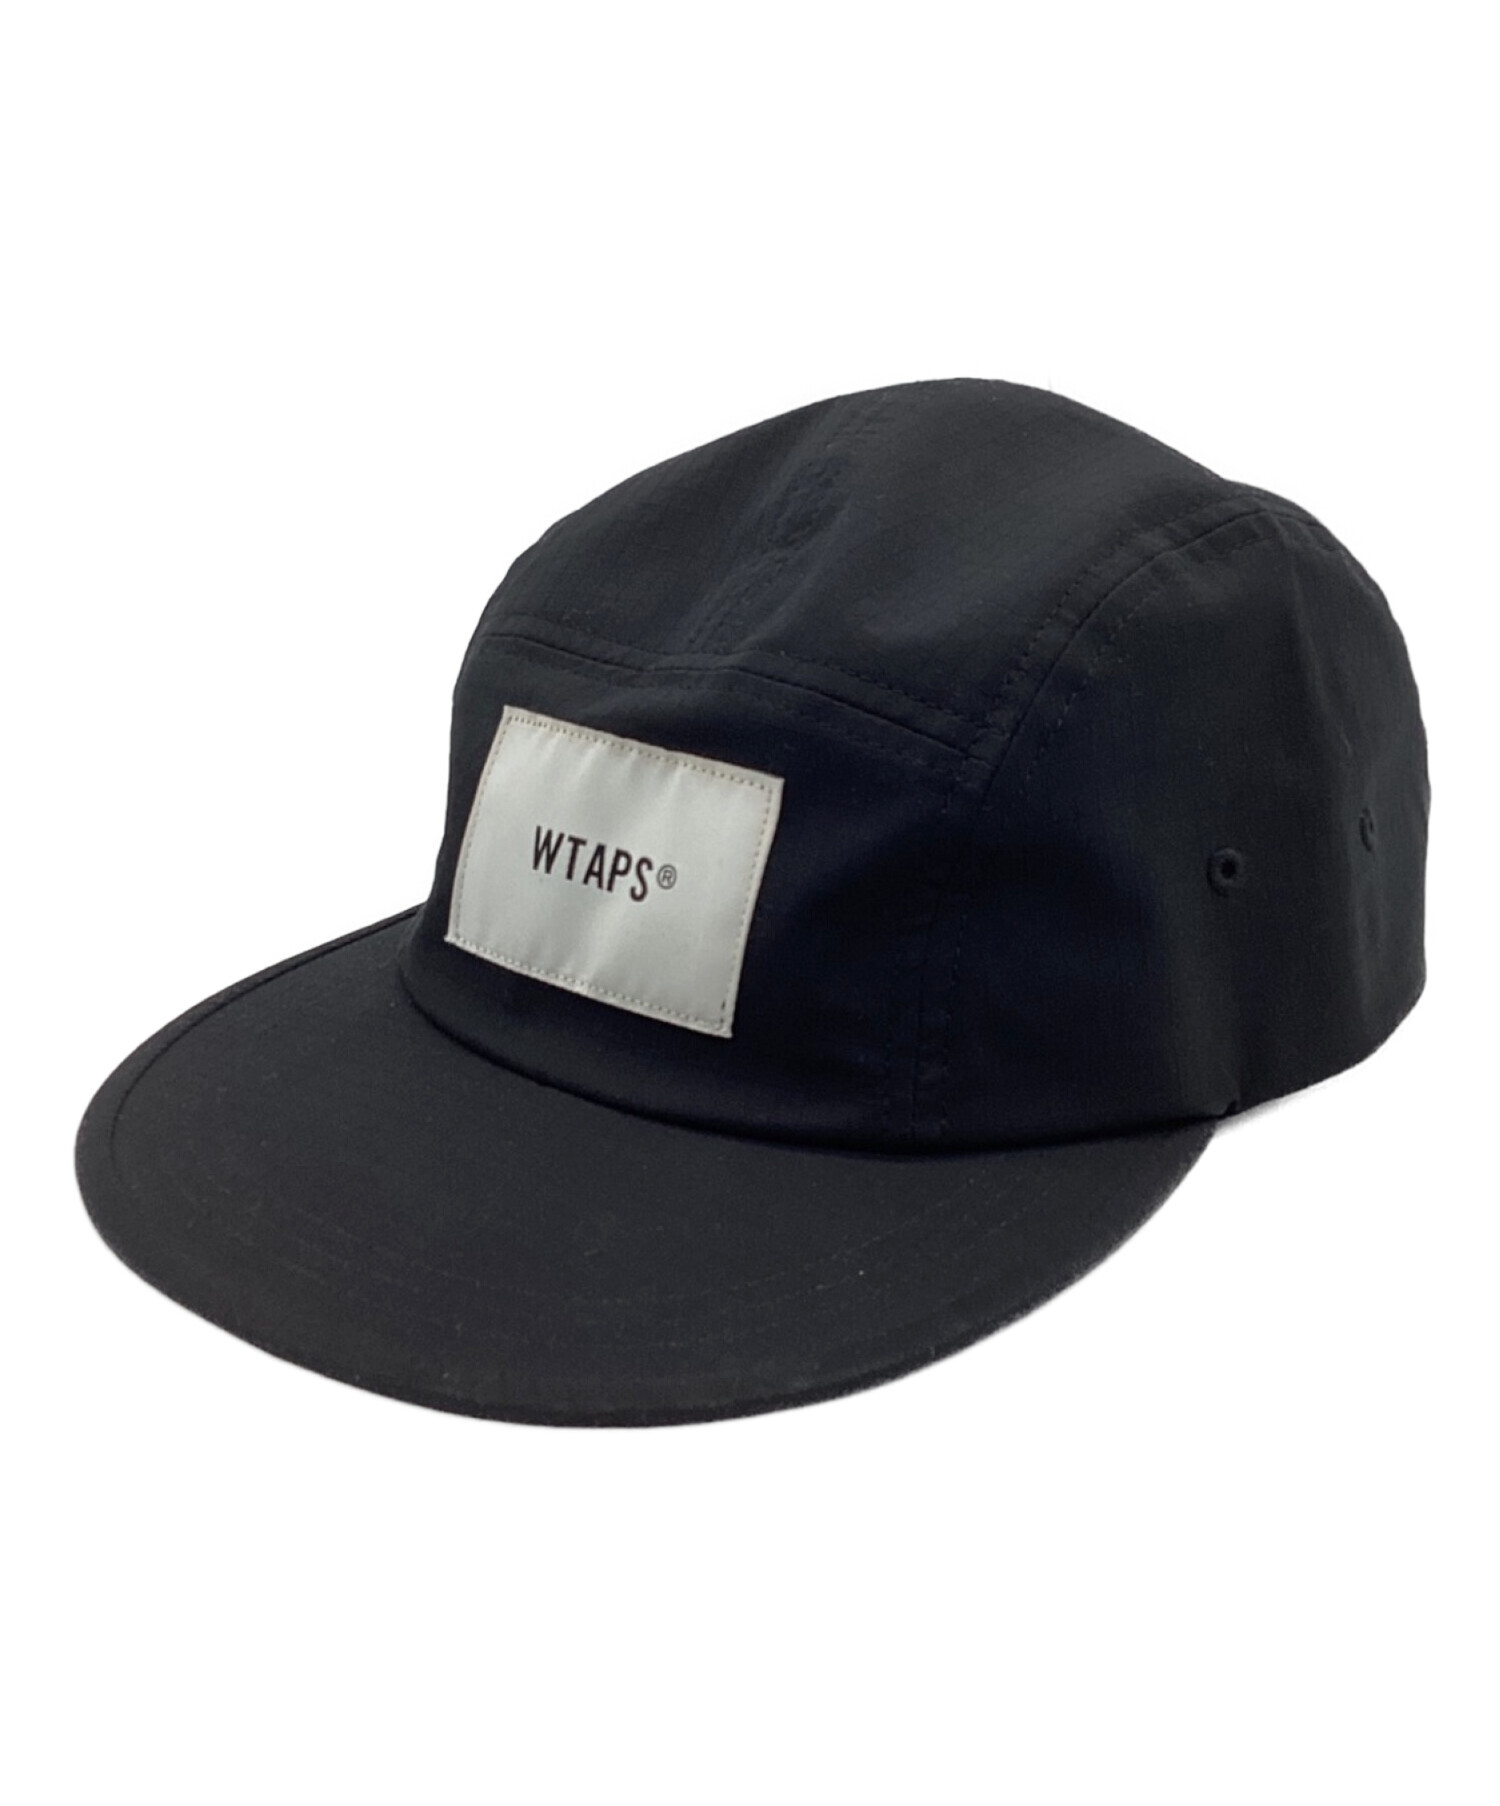 wtaps ジェットキャップ ブラック コットン - 帽子